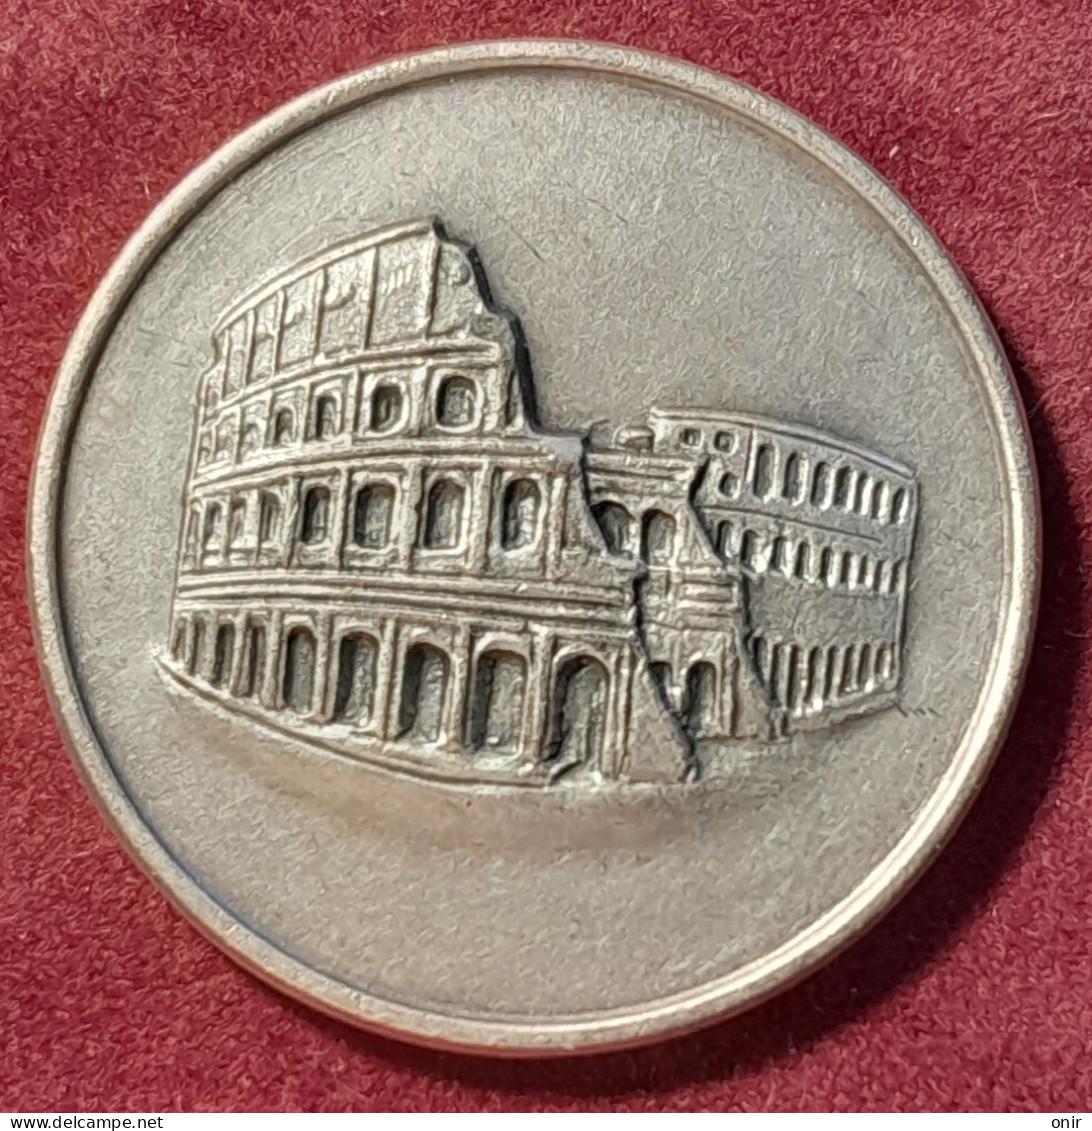 Medaglia Il Colosseo Roma - Adel